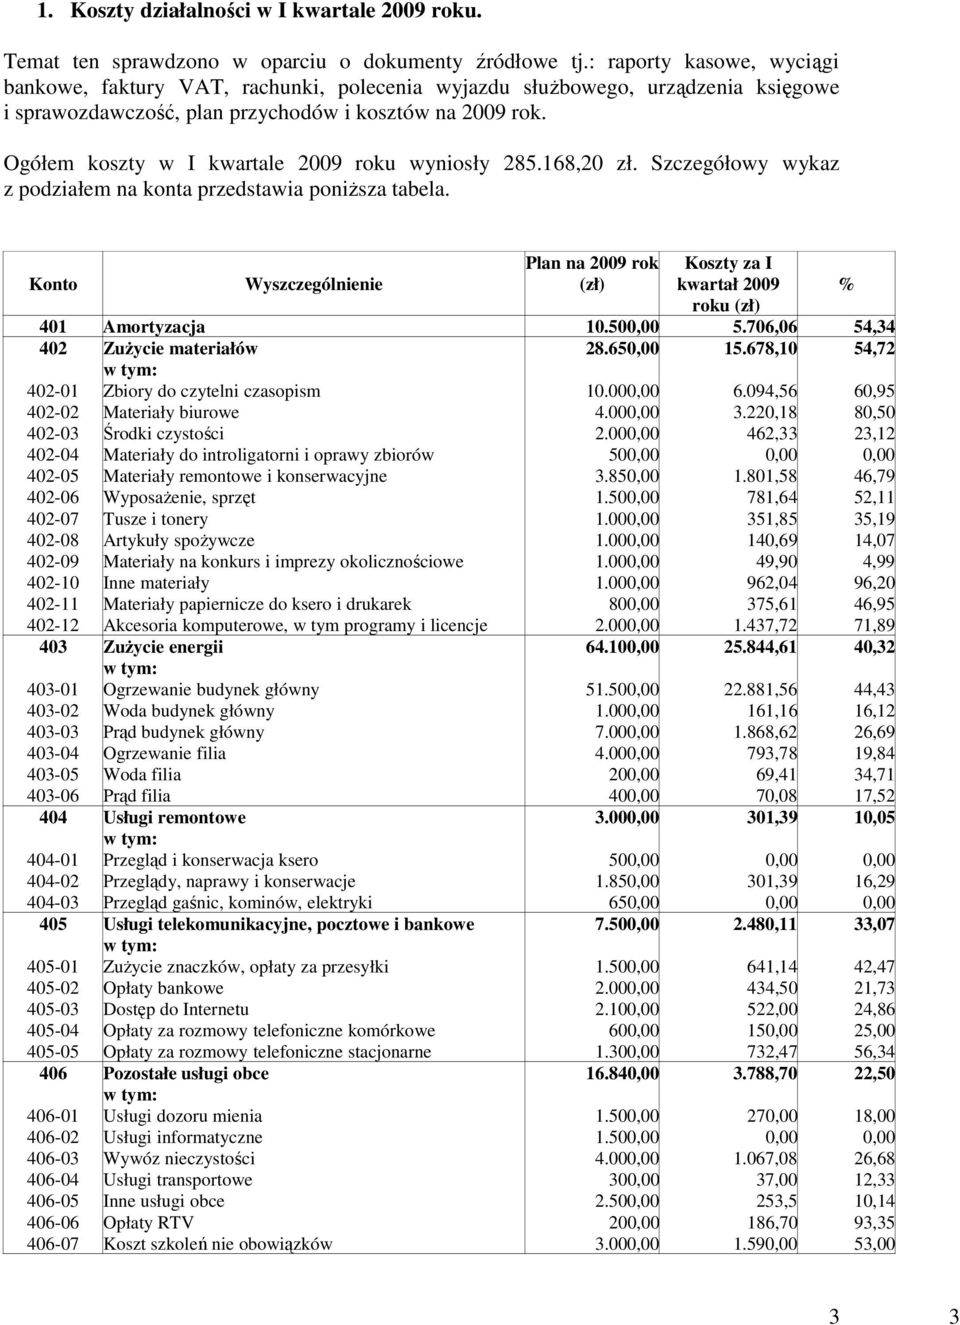 Ogółem koszty w I kwartale 2009 roku wyniosły 285.168,20 zł. Szczegółowy wykaz z podziałem na konta przedstawia poniŝsza tabela.